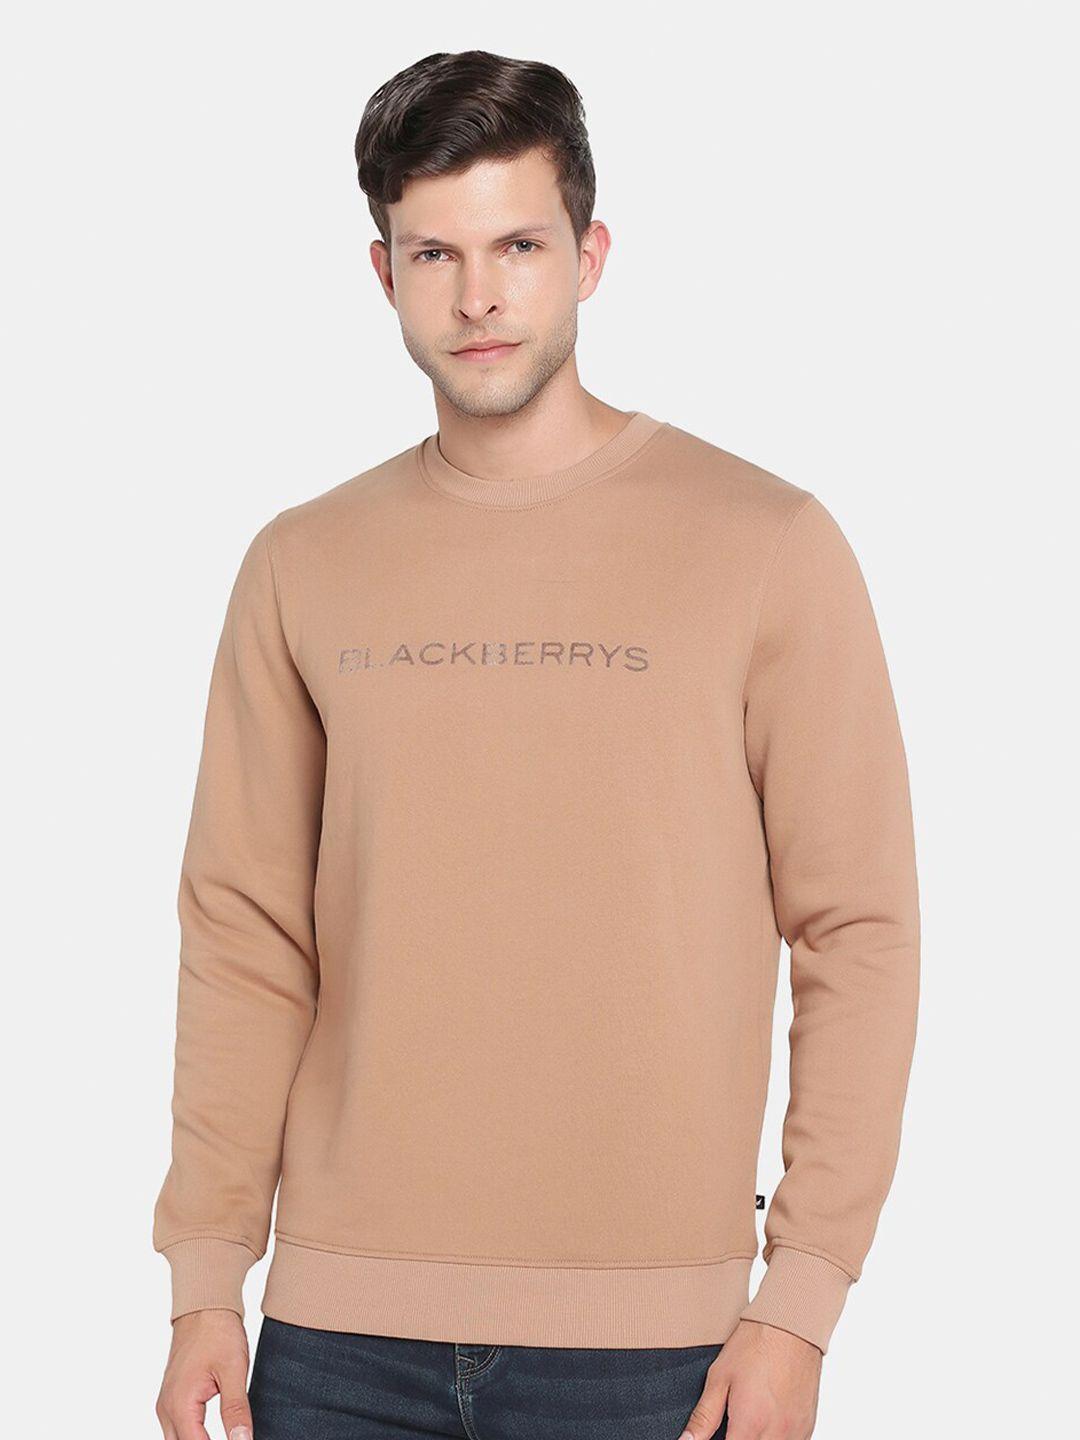 blackberrys-men-printed-sweatshirt